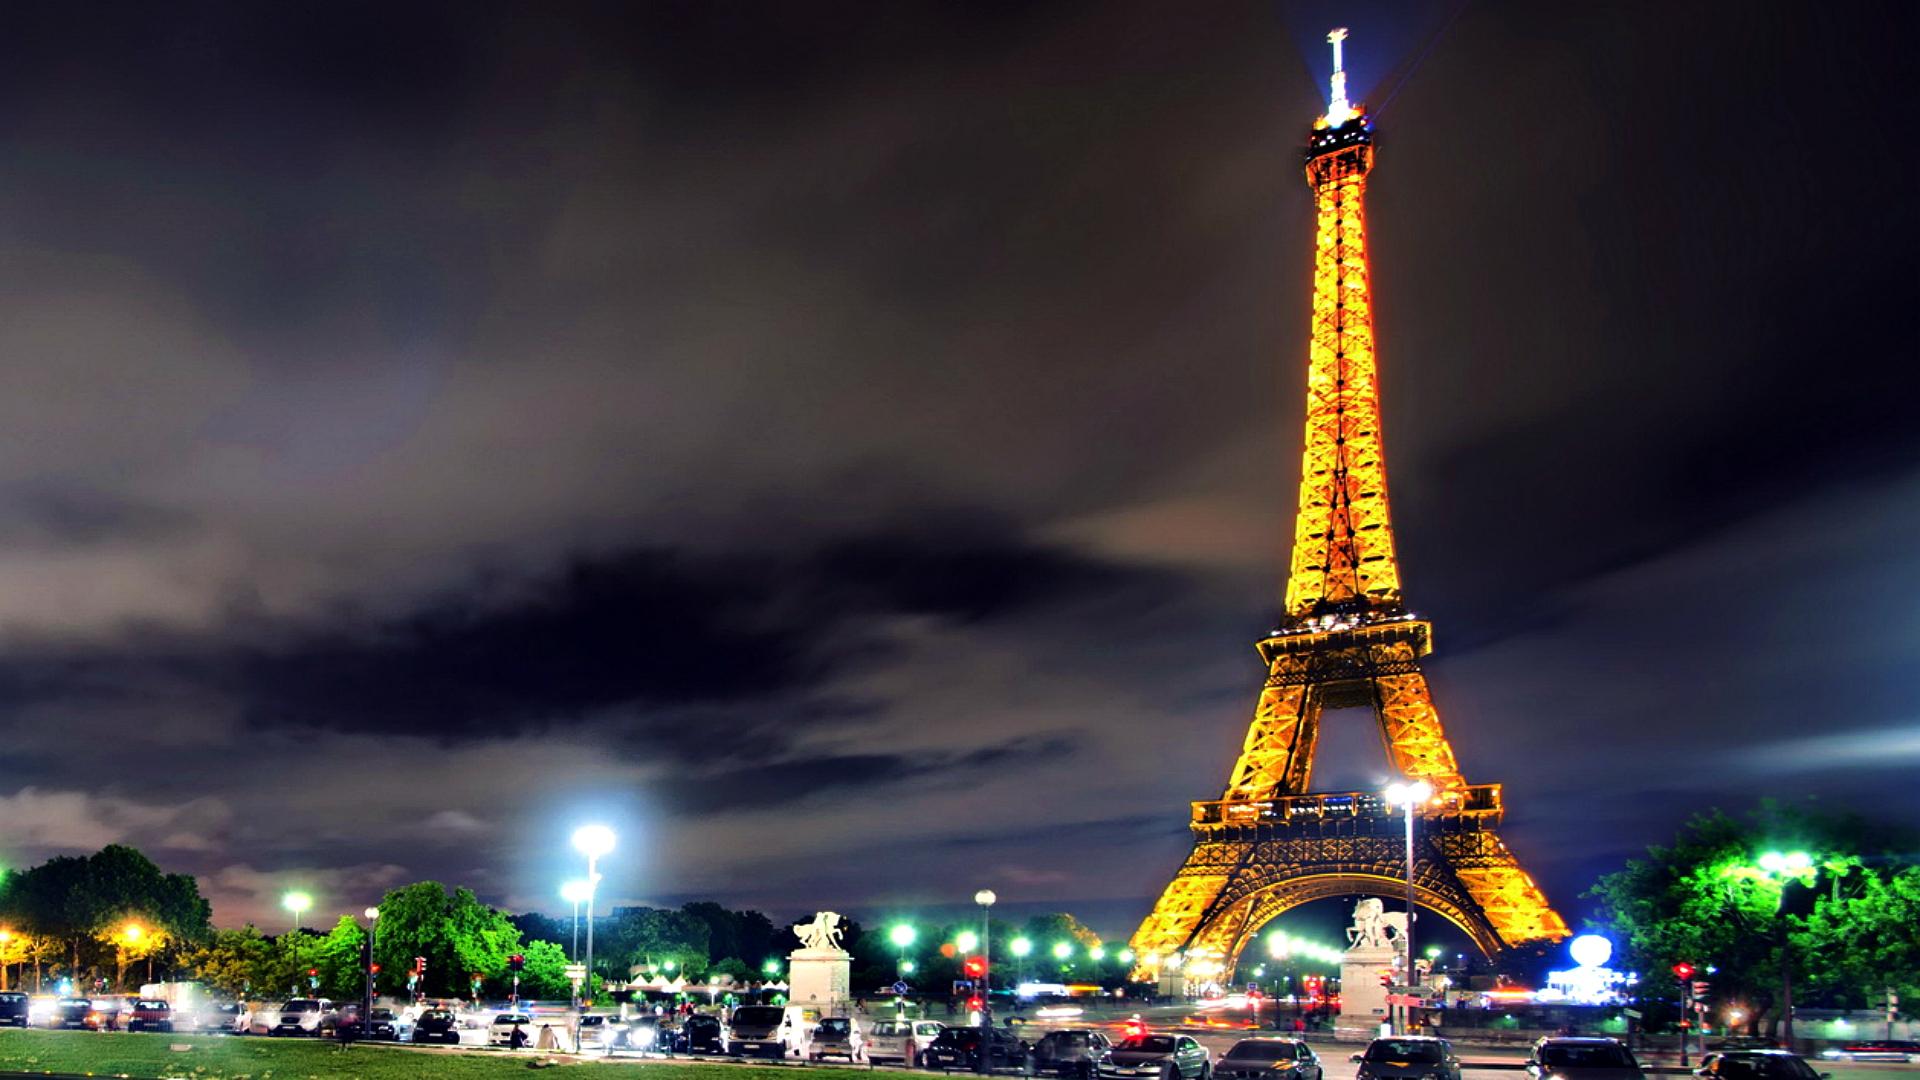 1920 x 1080 · jpeg - Eiffel Tower wallpapers at Night | PixelsTalk